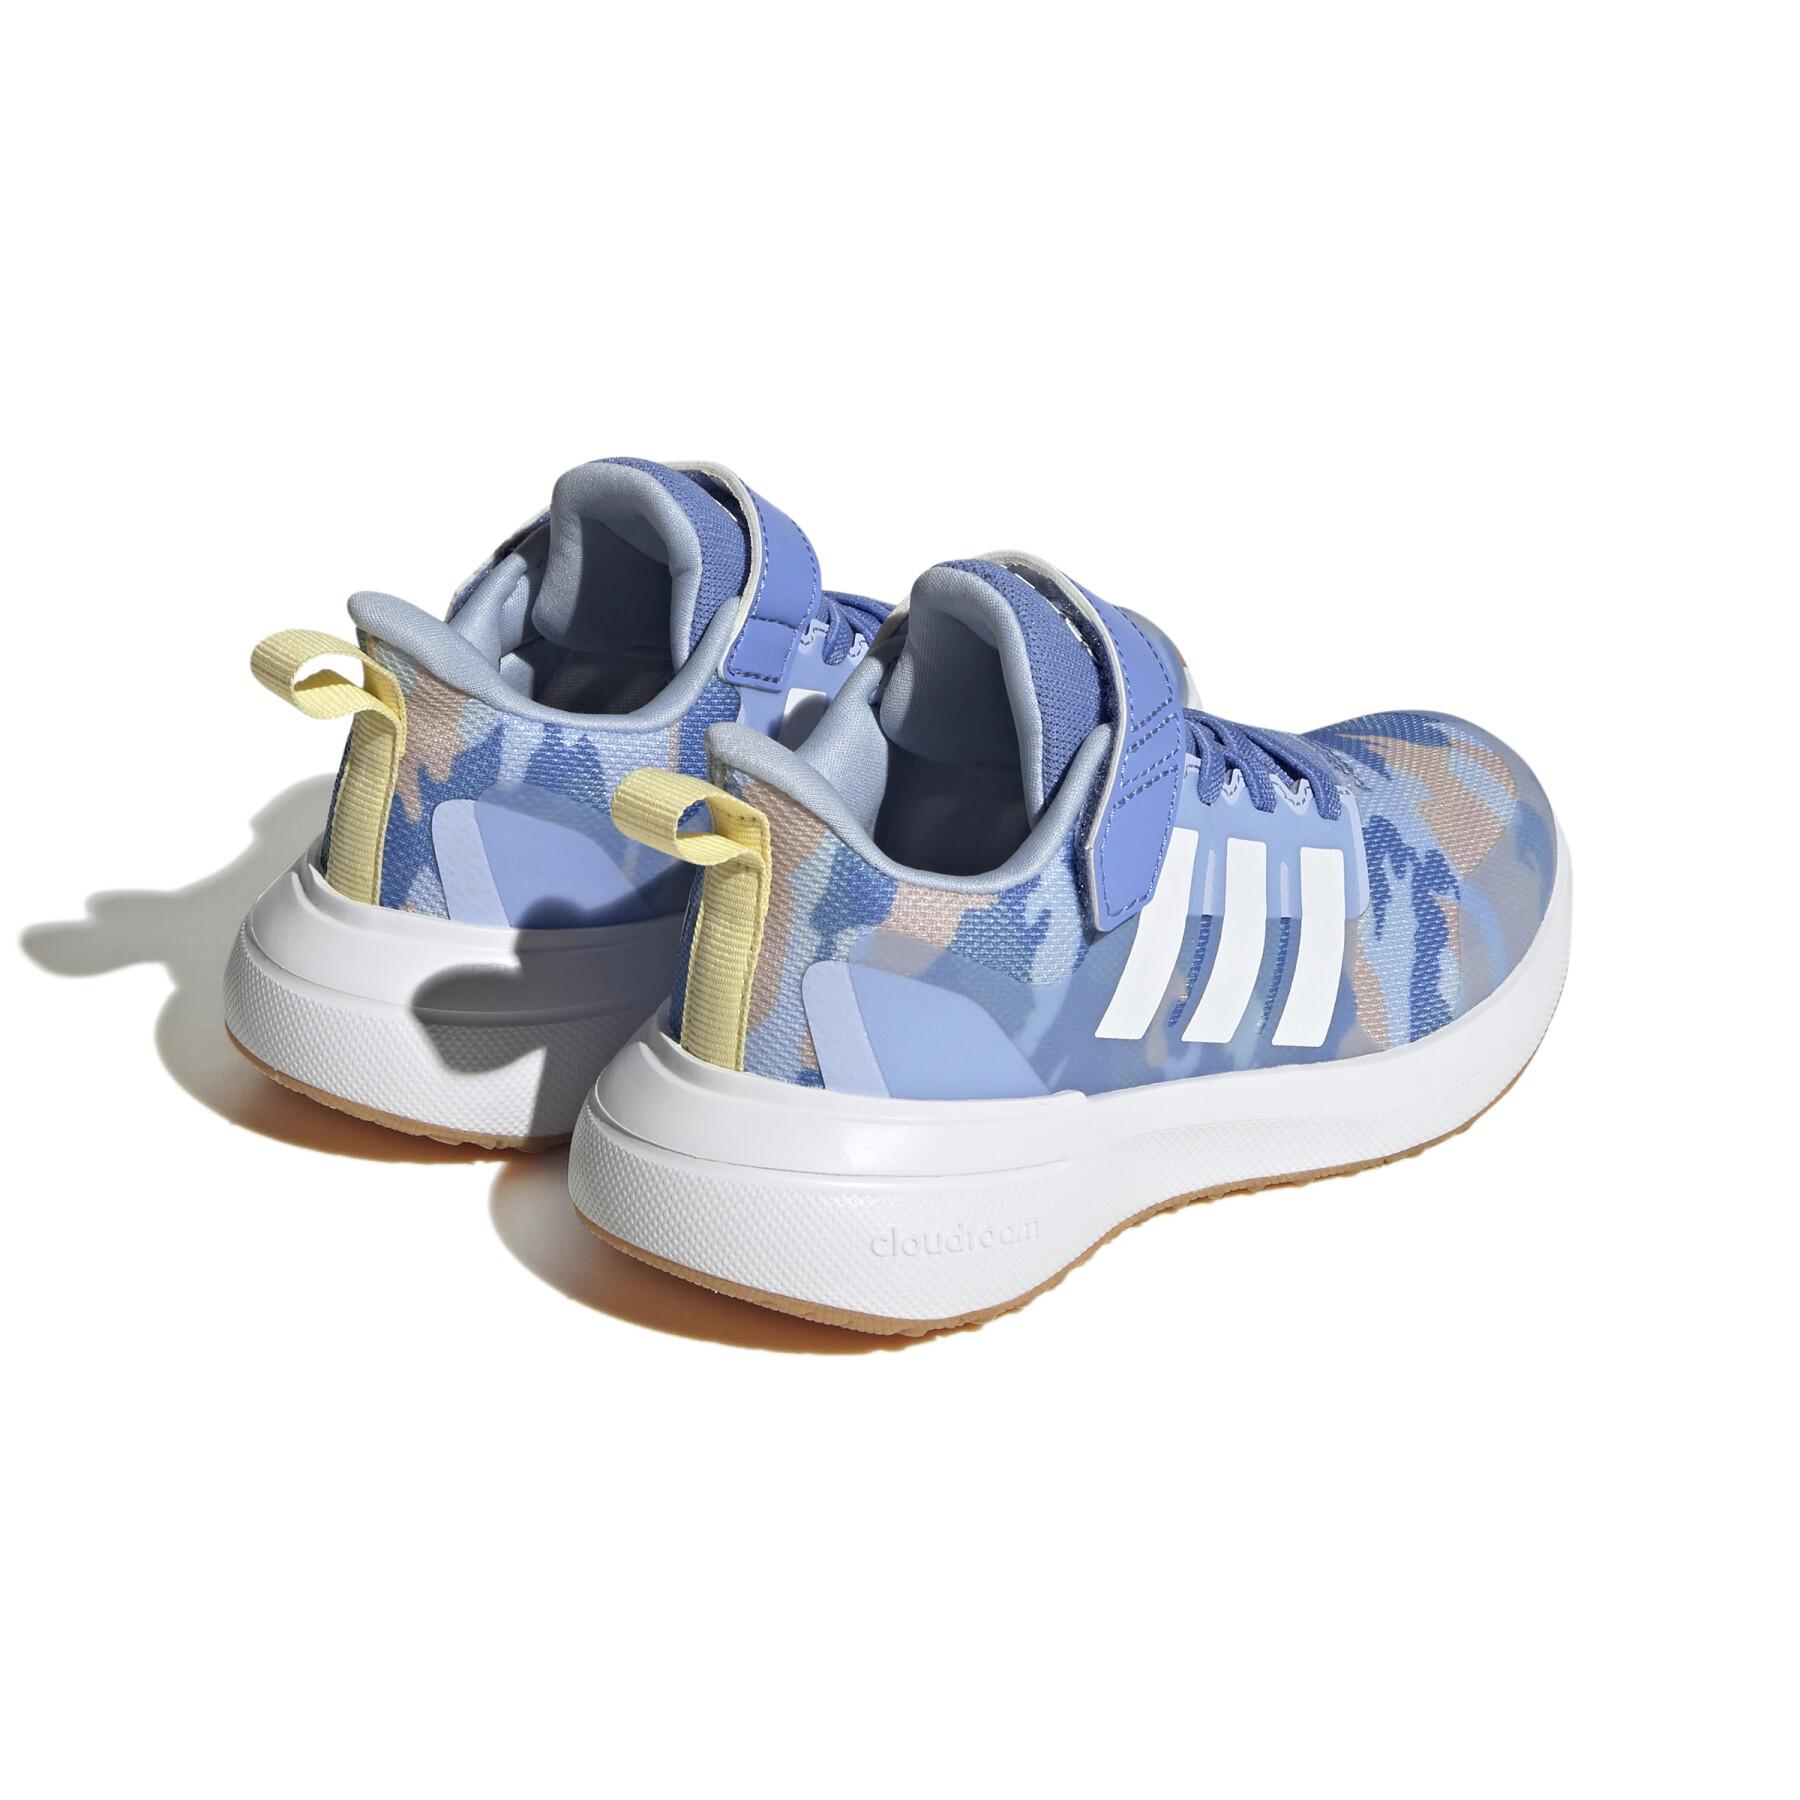  running calzado infantil adidas Fortarun 2.0 Cloudfoam